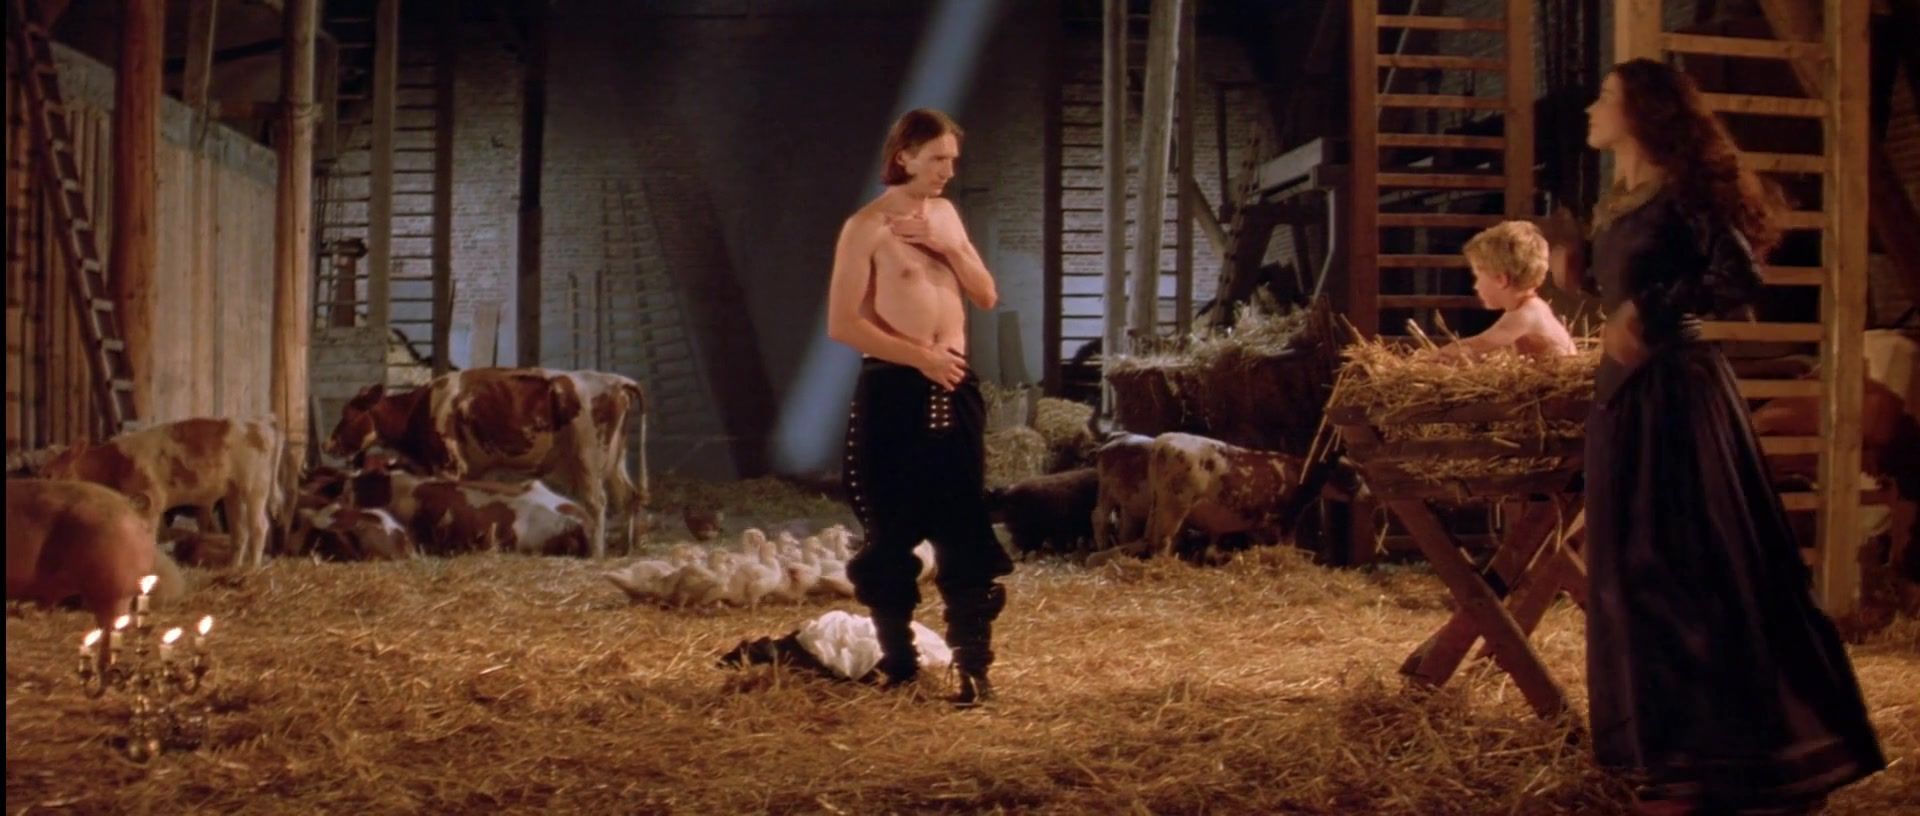 Casada Julia Ormond nude - The Baby of Macon (1993) China - 1